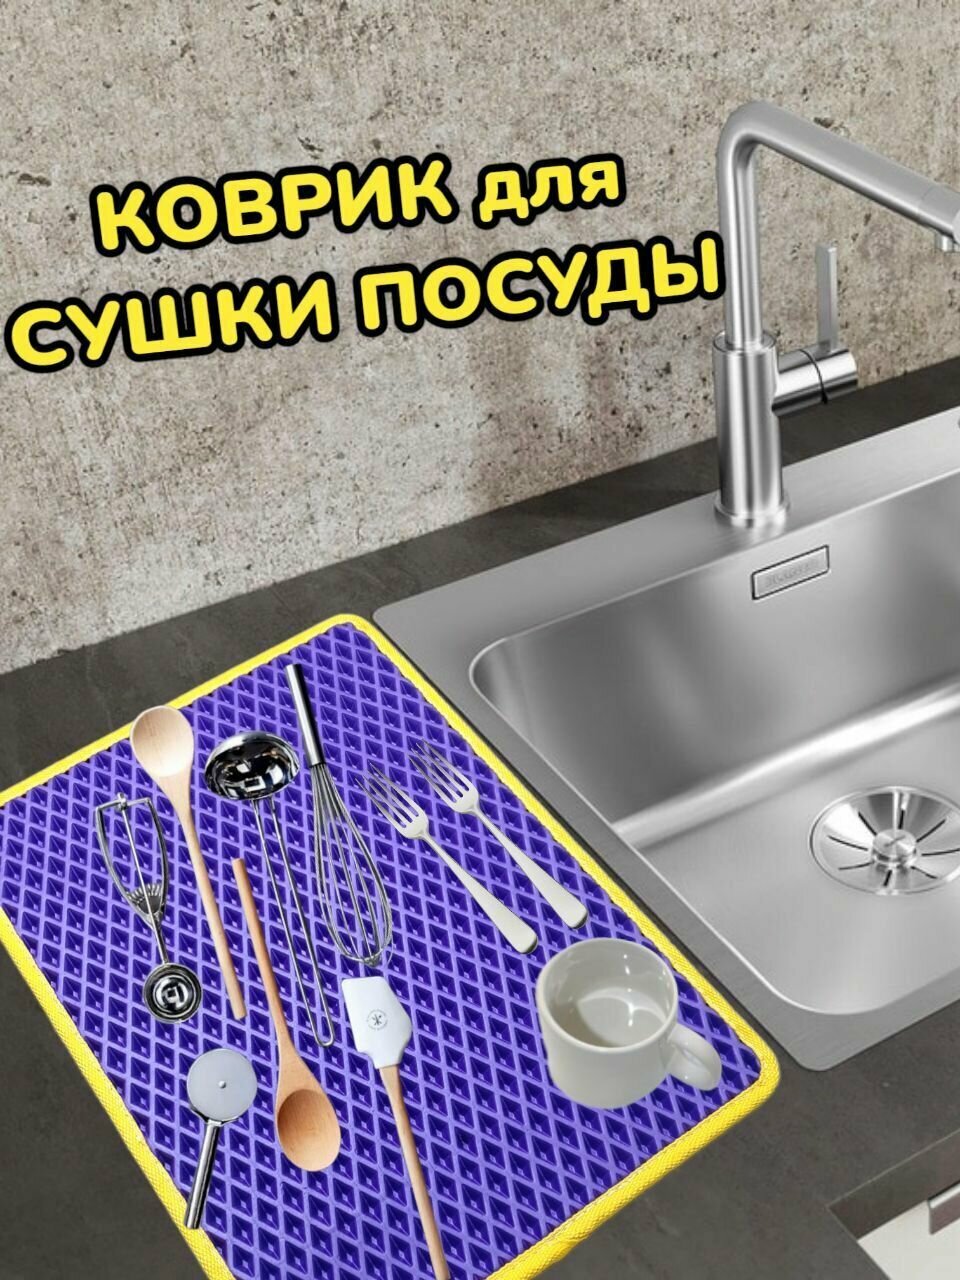 Коврик для сушки посуды / Поддон для сушилки посуды / 40 см х 30 см х 1 см / Фиолетовый с желтым кантом